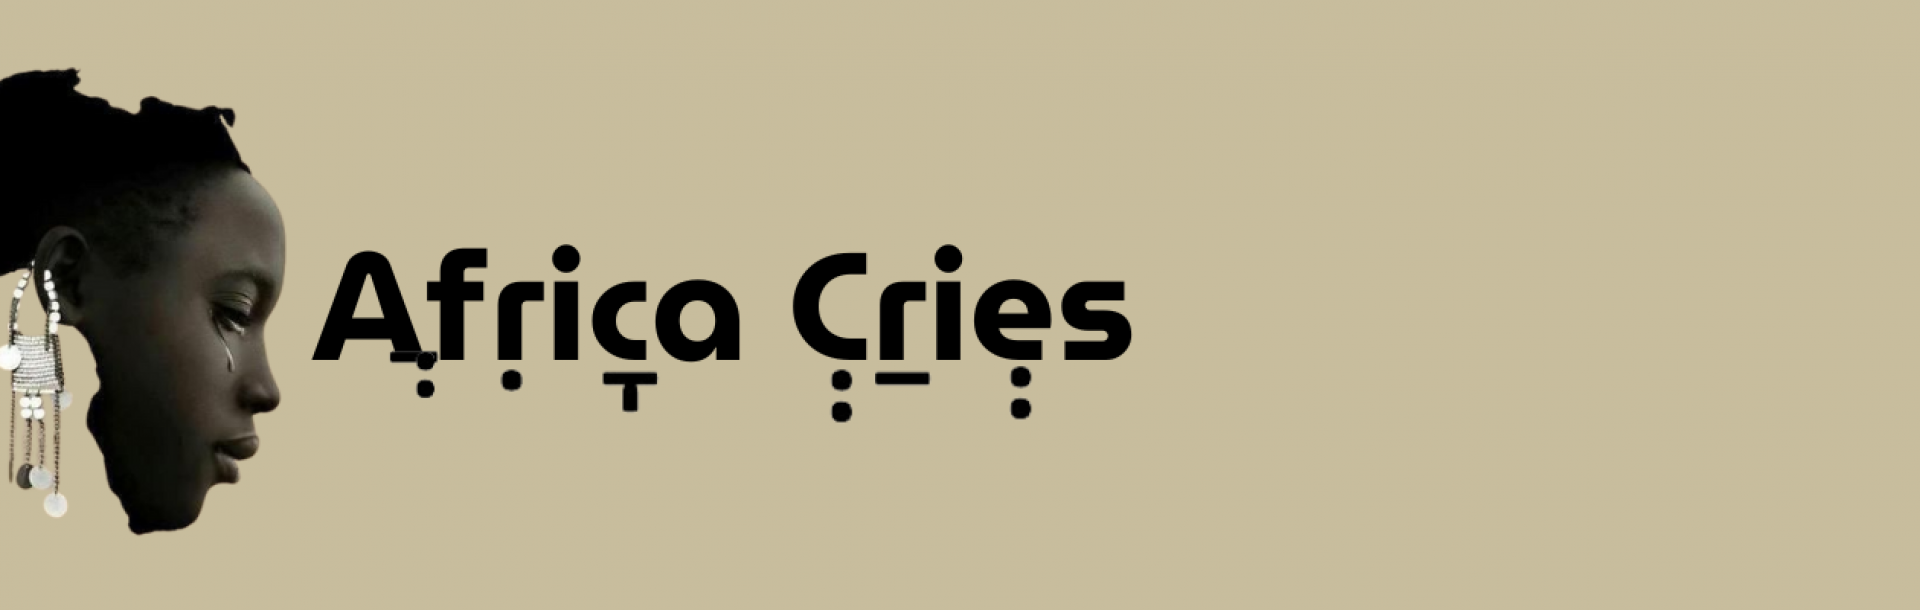 אפריקה בוכה - הסדרה הווקאלית